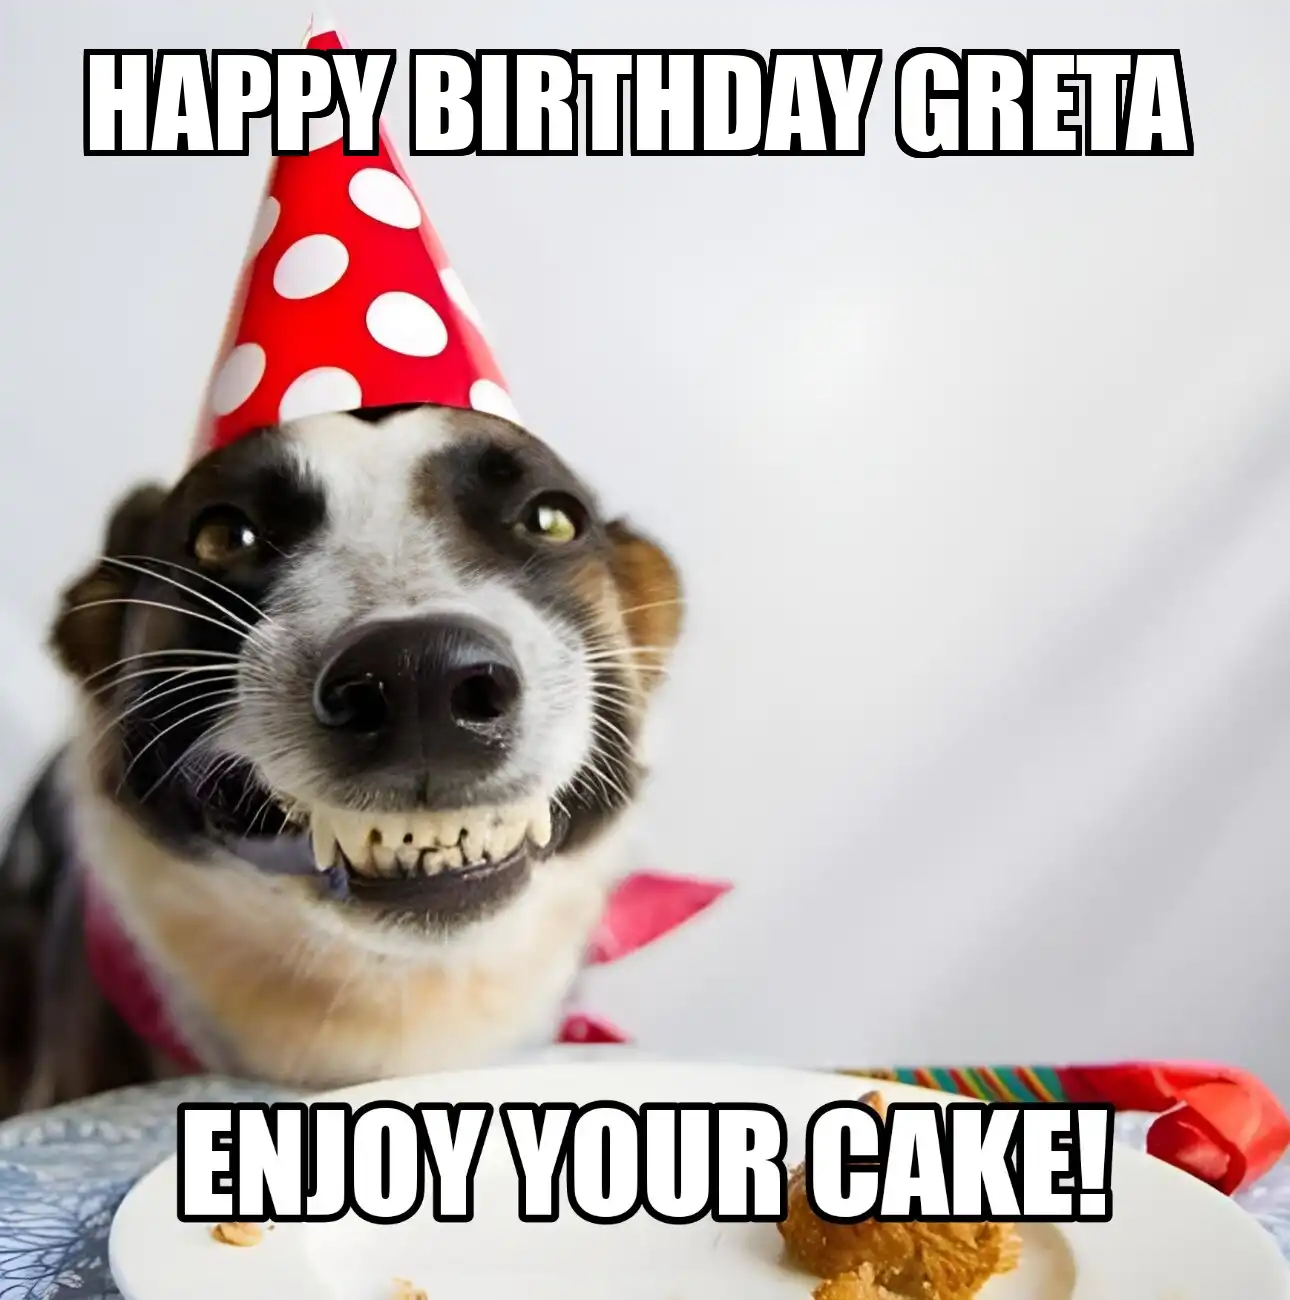 Happy Birthday Greta Enjoy Your Cake Dog Meme